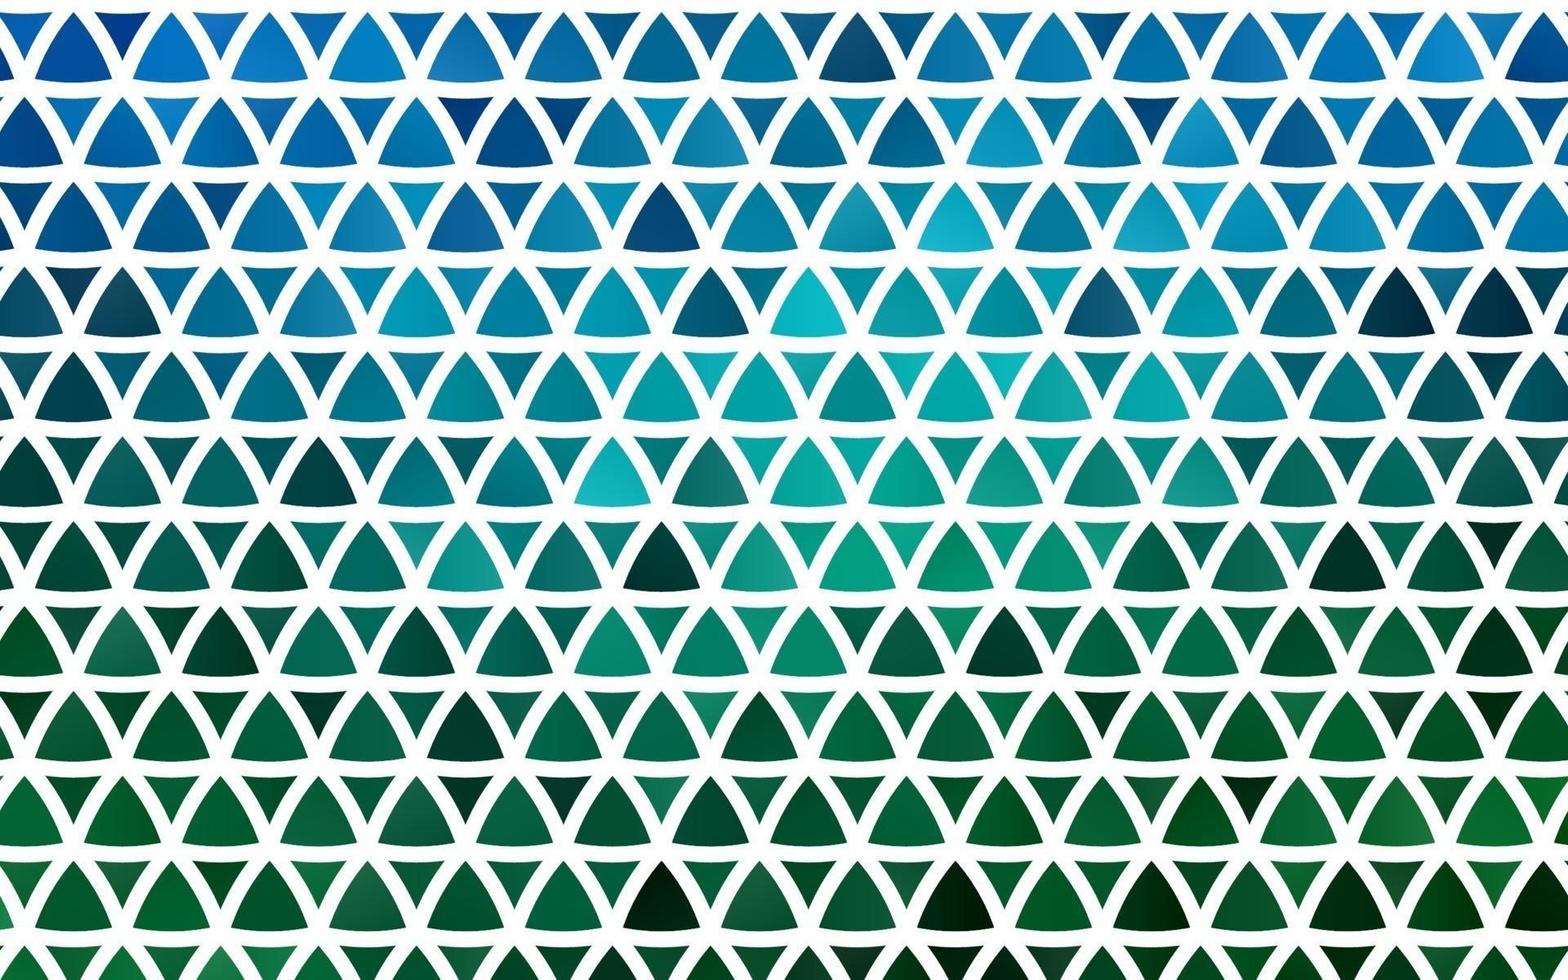 ljusblå, grön vektor sömlösa mönster i polygonal stil.